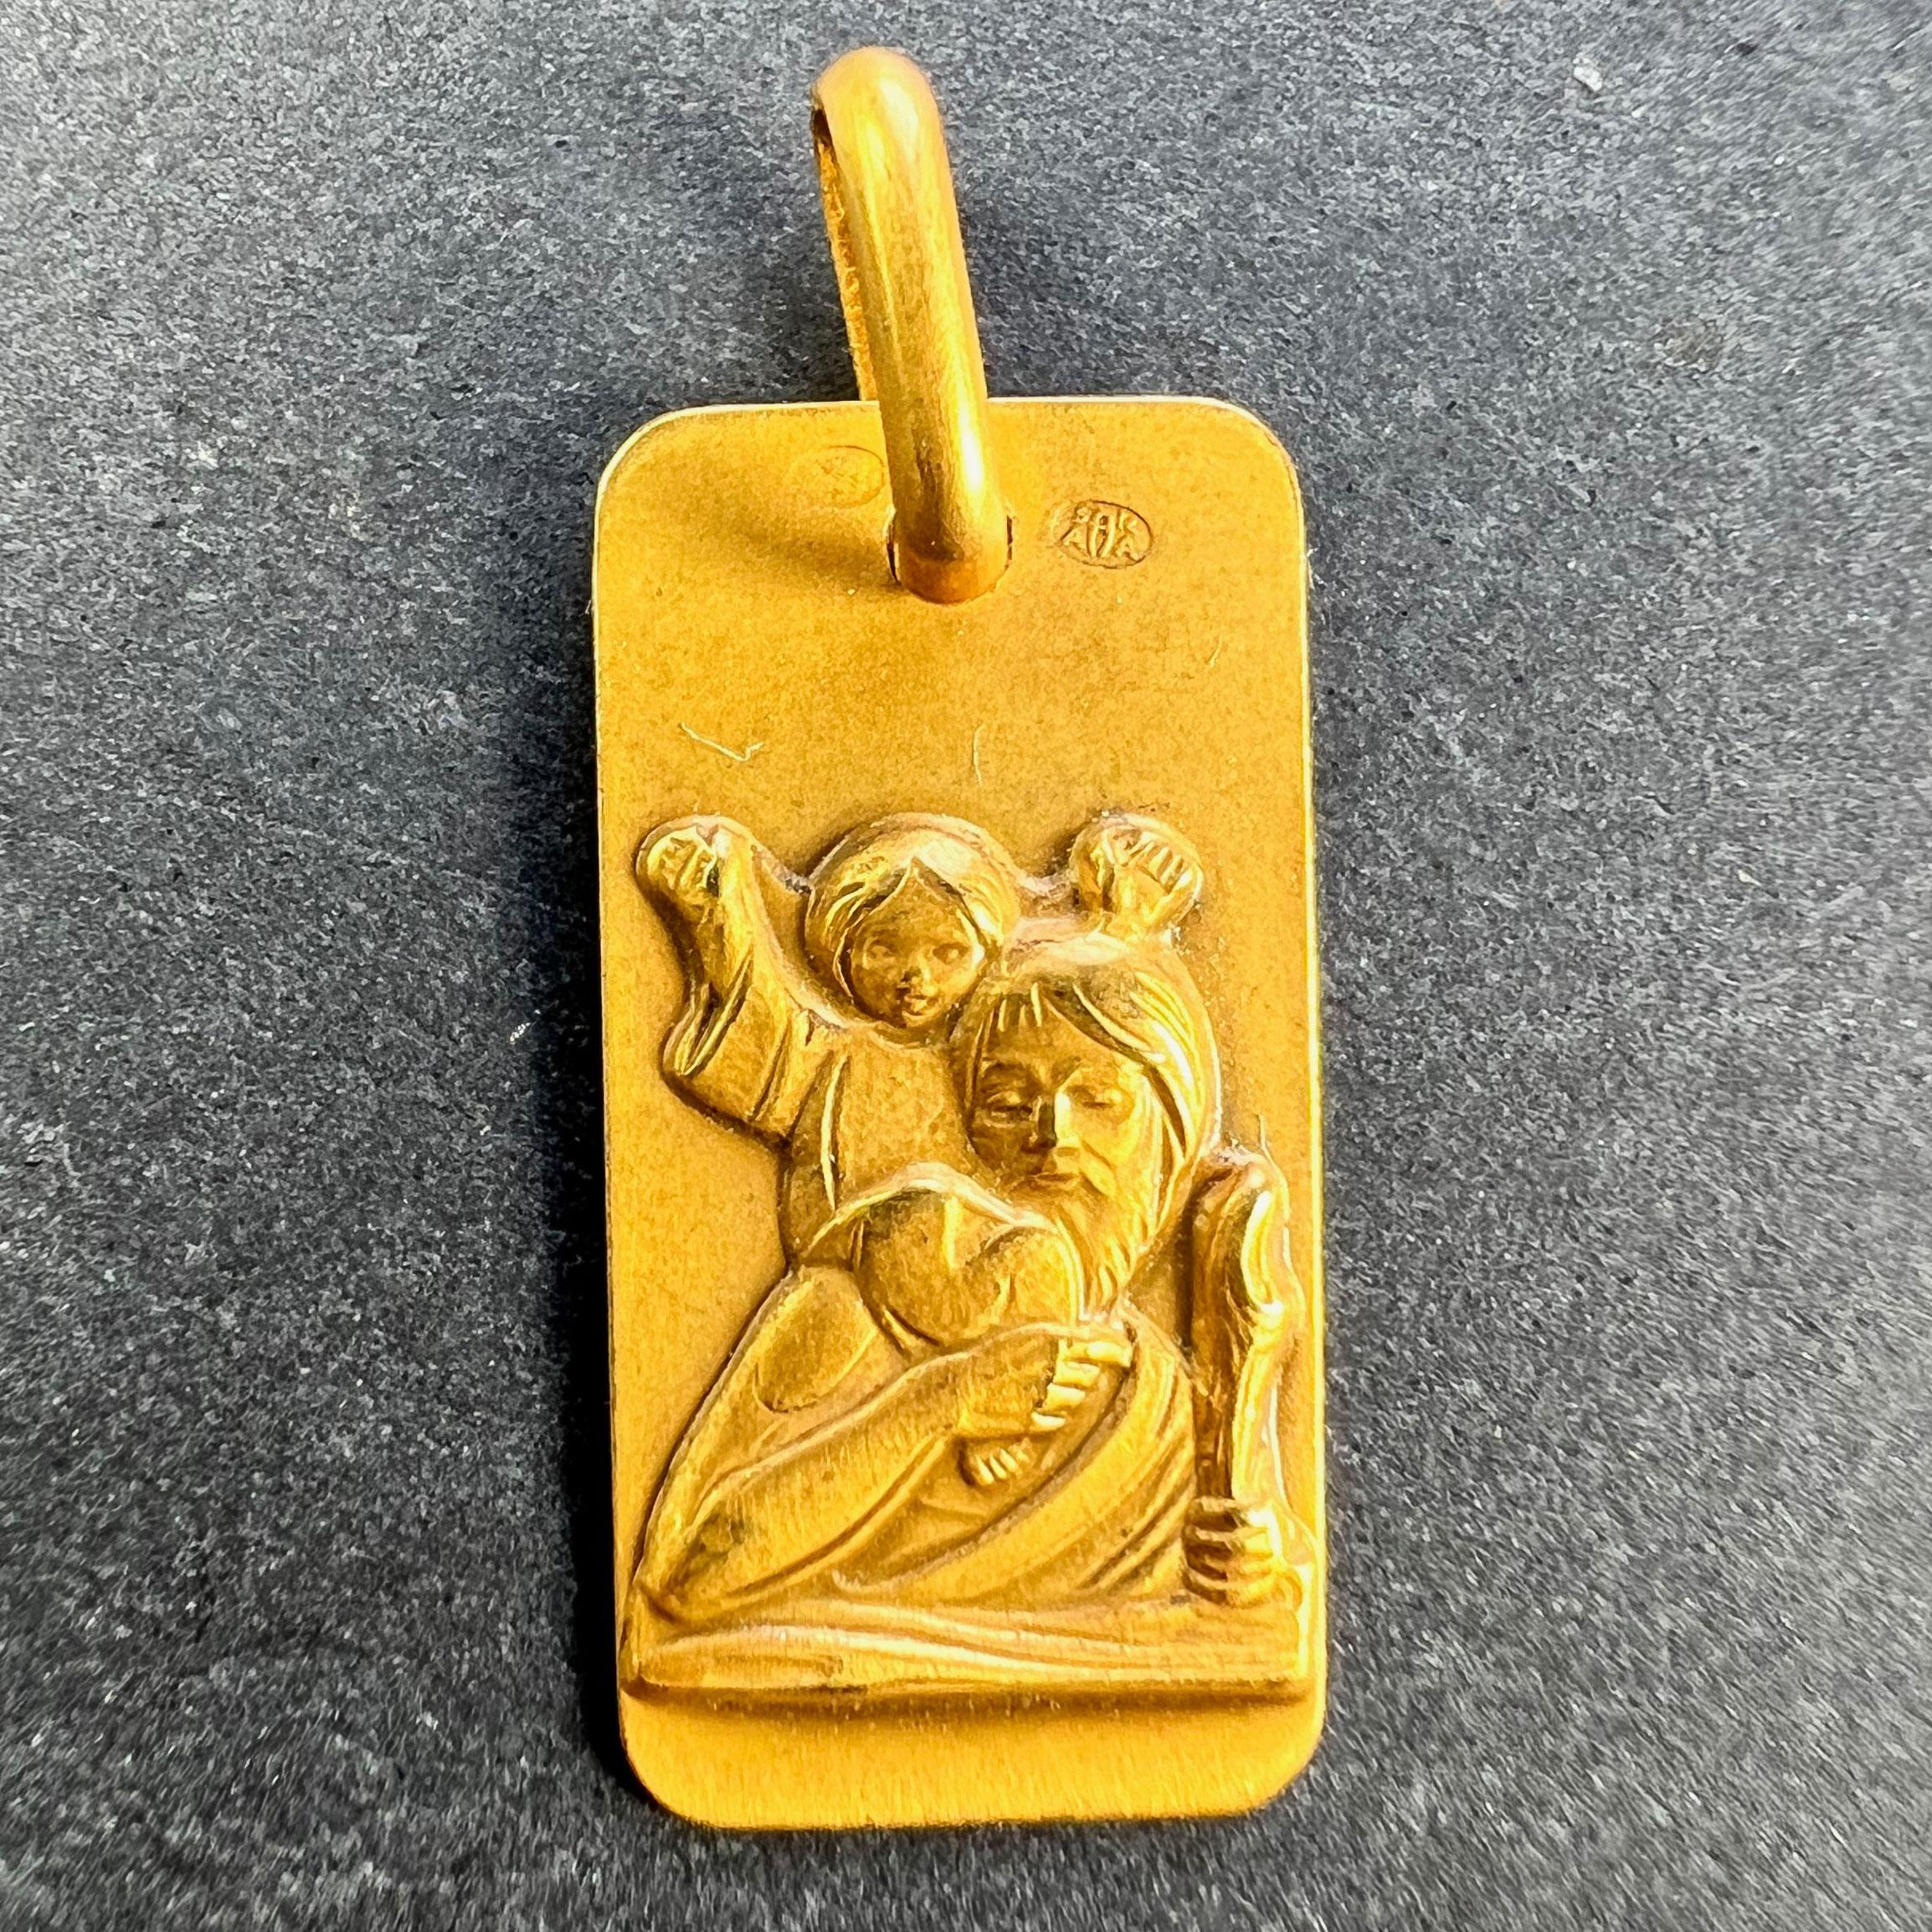 Ein Vintage Französisch 18 Karat (18K) Gelbgold rechteckigen Charme Anhänger oder Medaille, die St. Christopher trägt das Kind Christus über den Fluss. Gestempelt für französische Herstellung und 18 Karat Gold zusammen mit Augis'